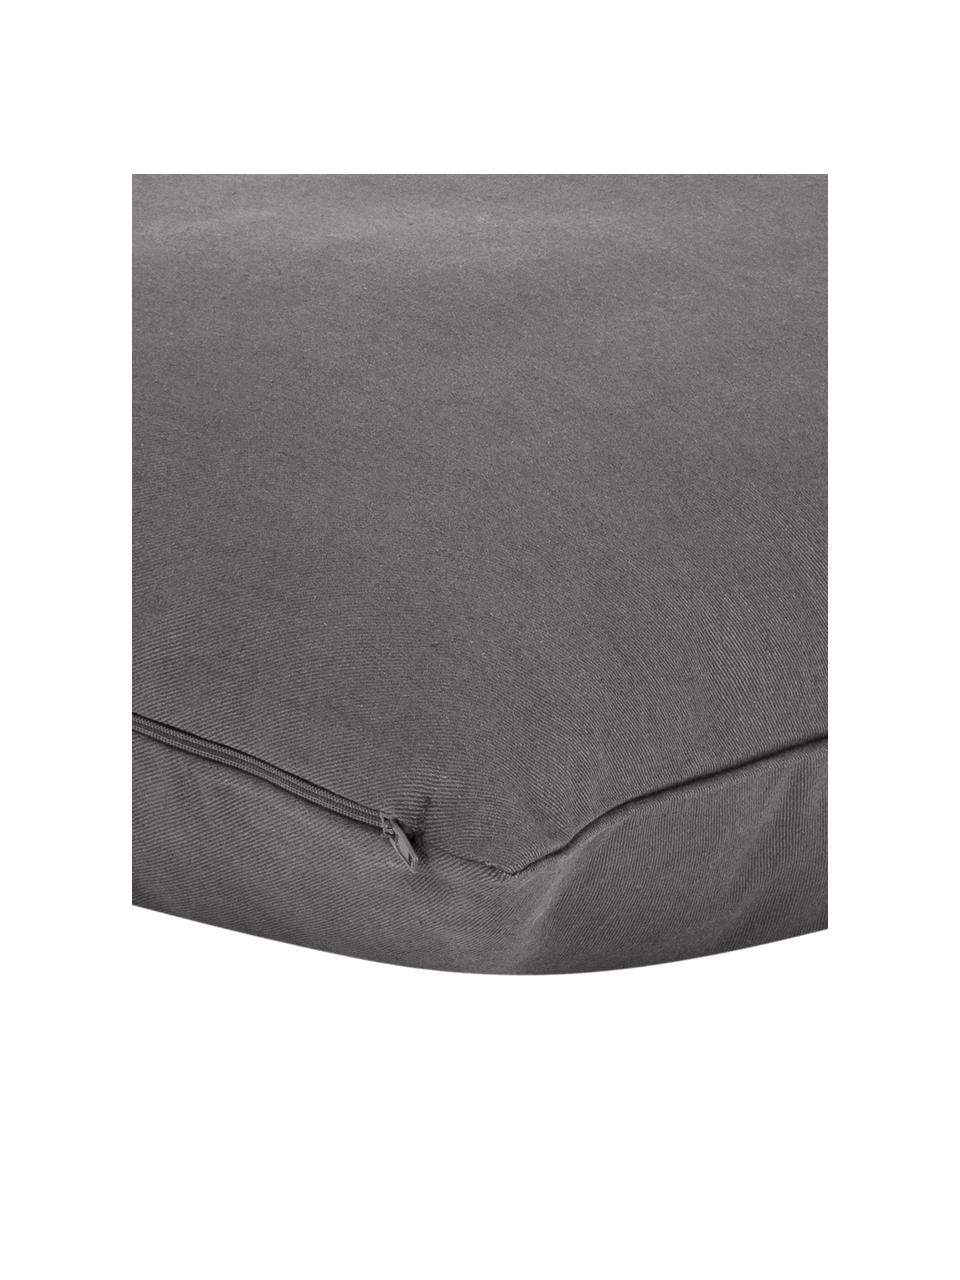 Poszewka na poduszkę Mads, 100% bawełna, Ciemny szary, S 40 x D 40 cm